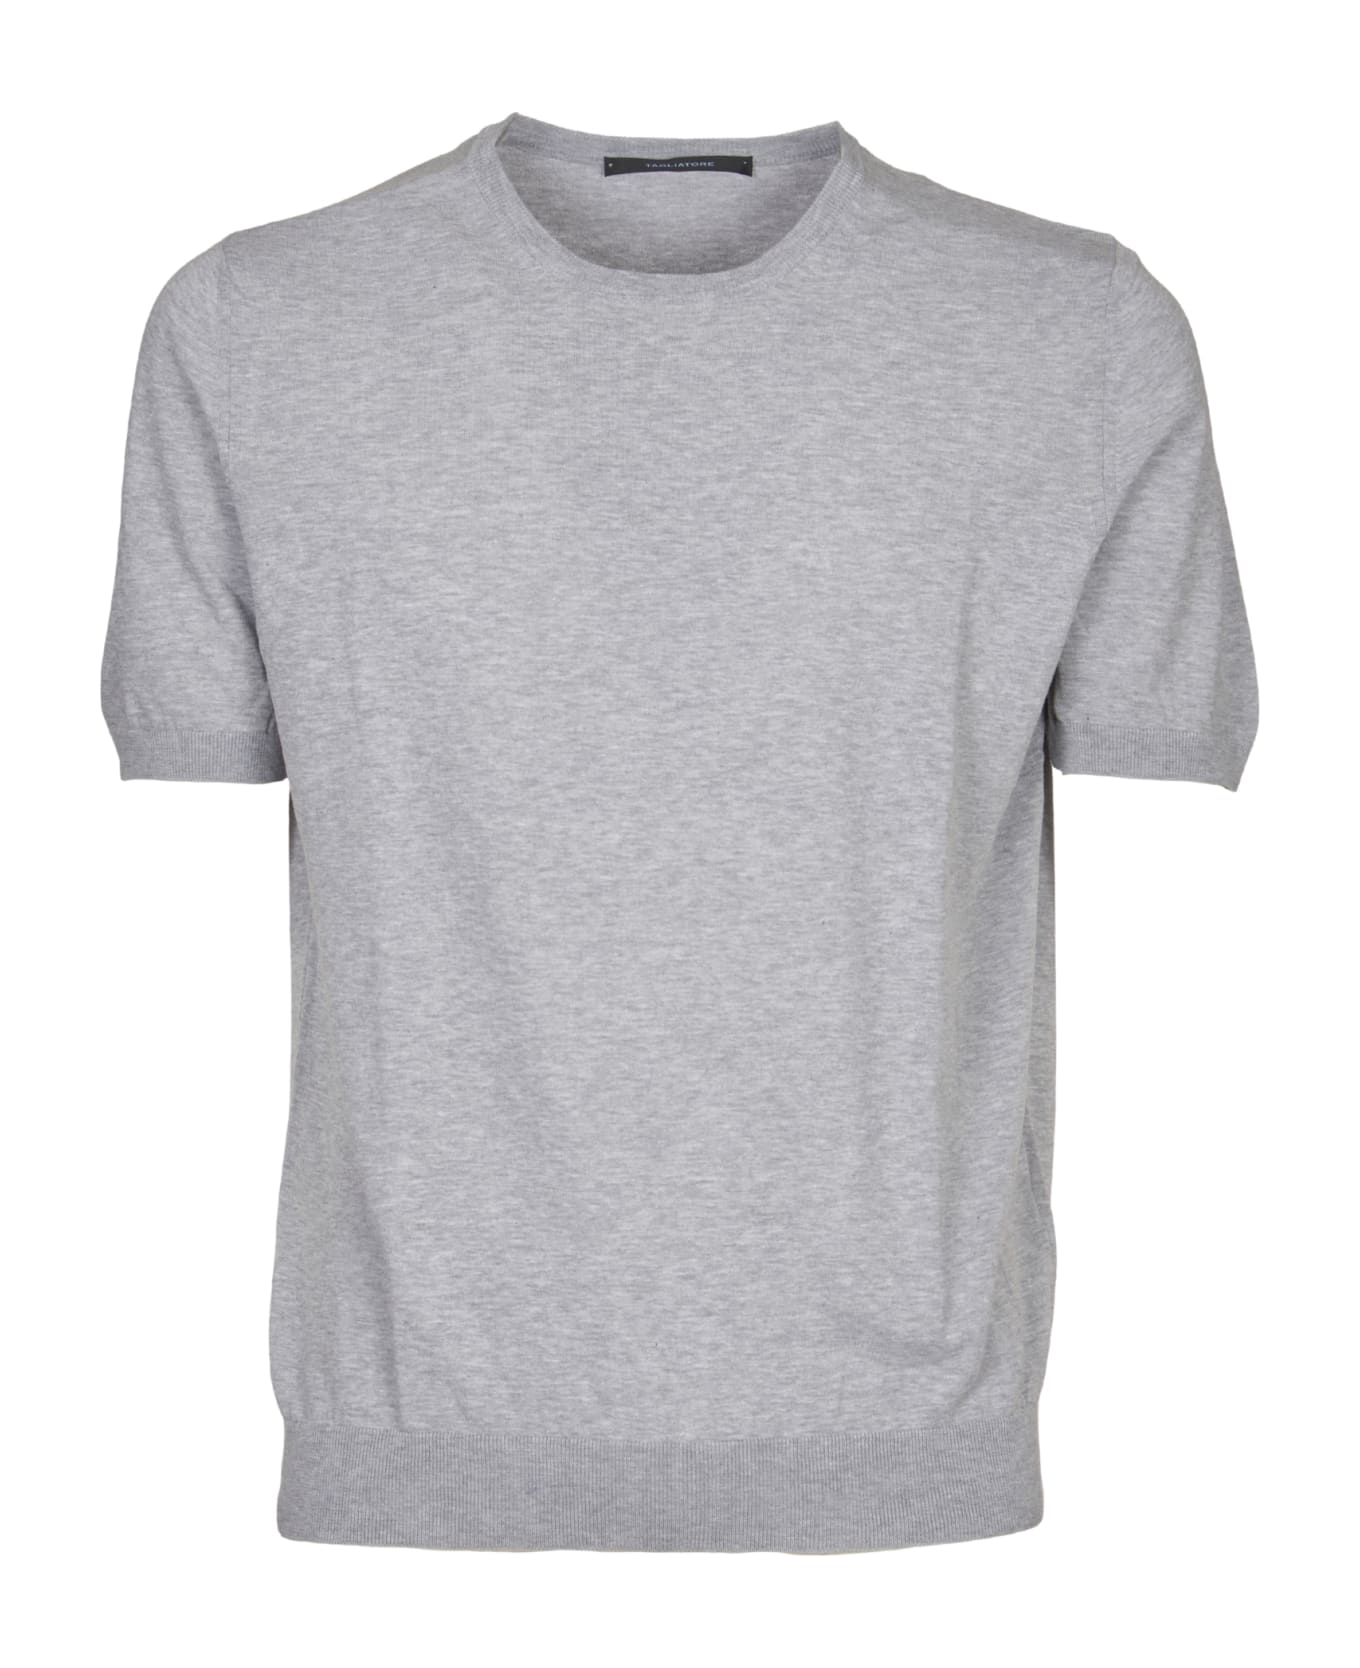 Tagliatore T-shirt - Grey シャツ